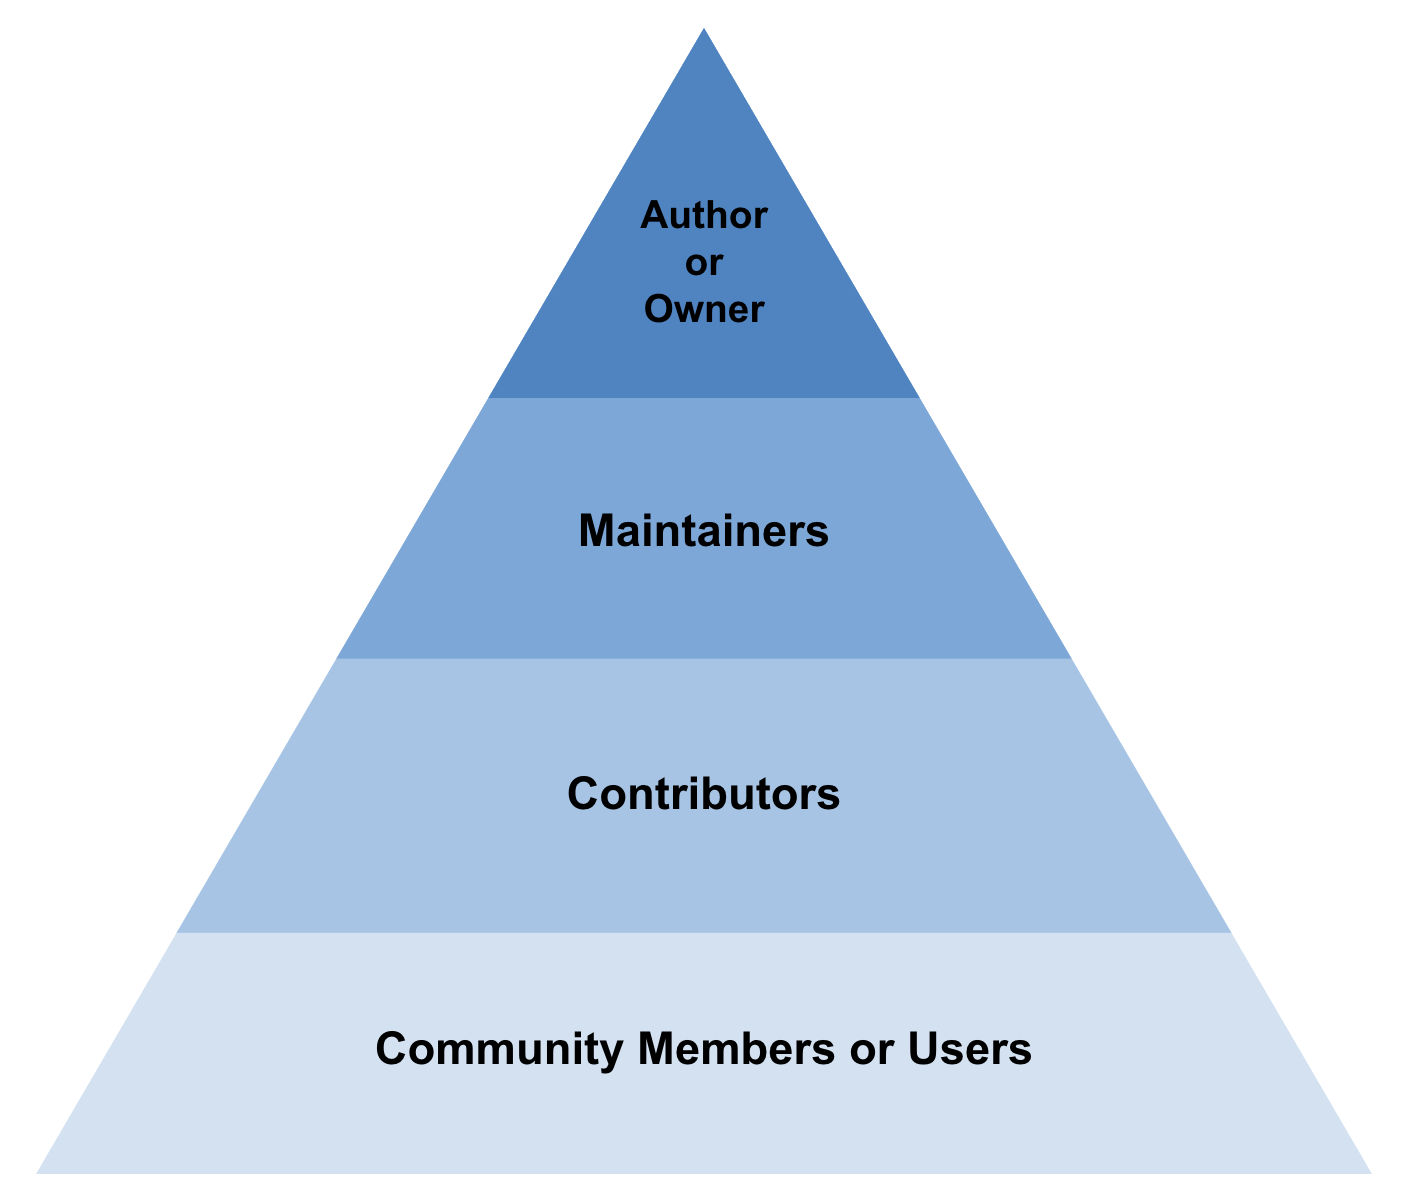 4가지 섹션으로 구분되는 오픈소스 프로젝트 멤버 구성 - Author or Owner, Maintainer, Contributor, Community member or User